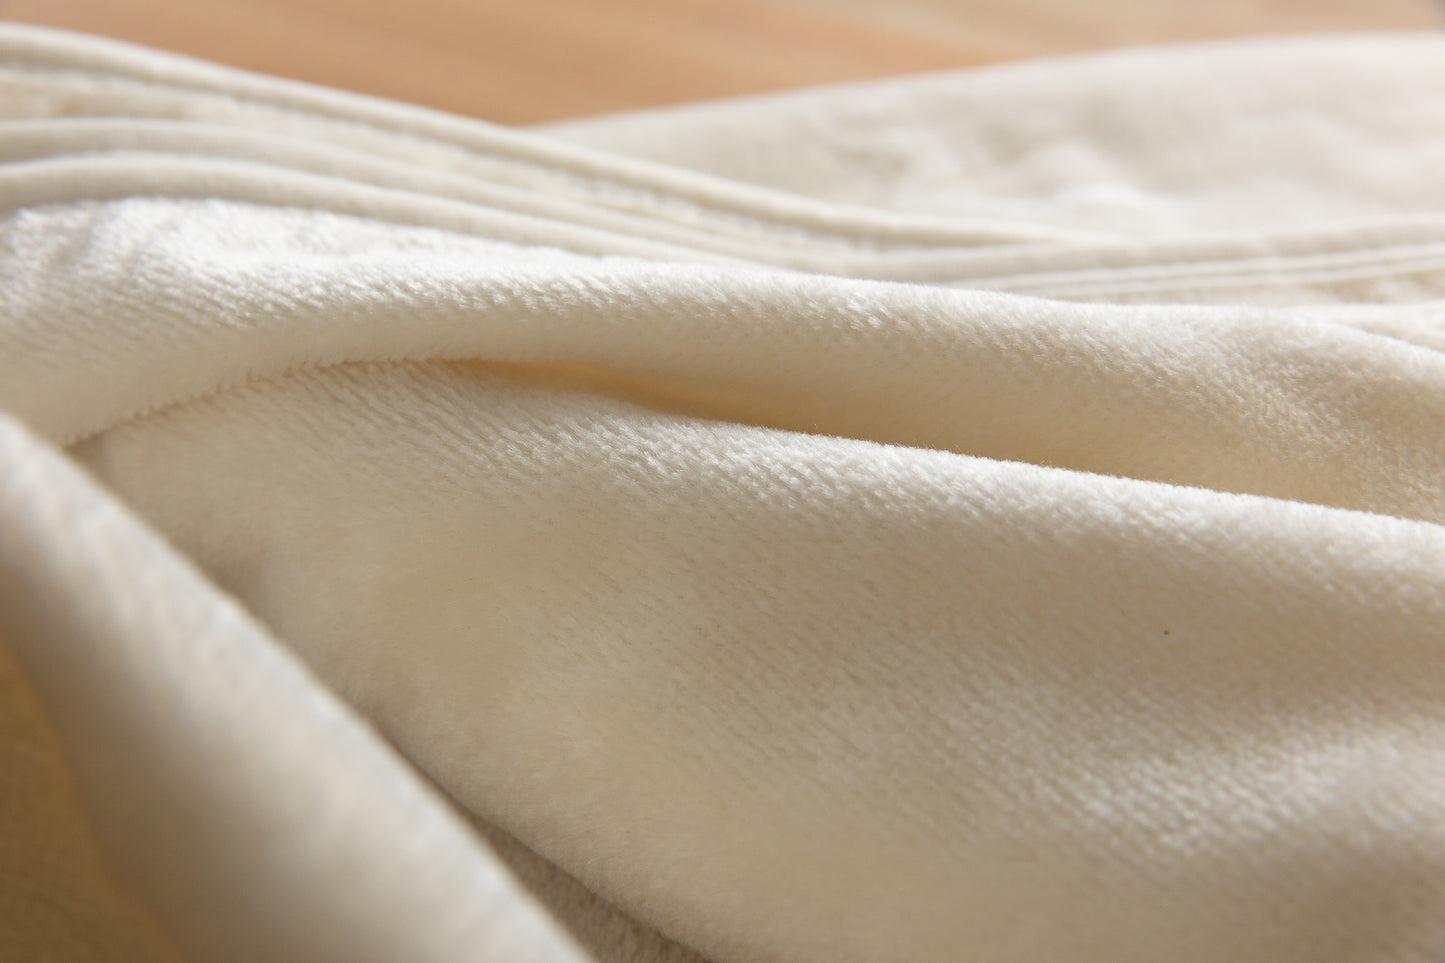 洗えるシルク毛布 シングルサイズ(140*200)